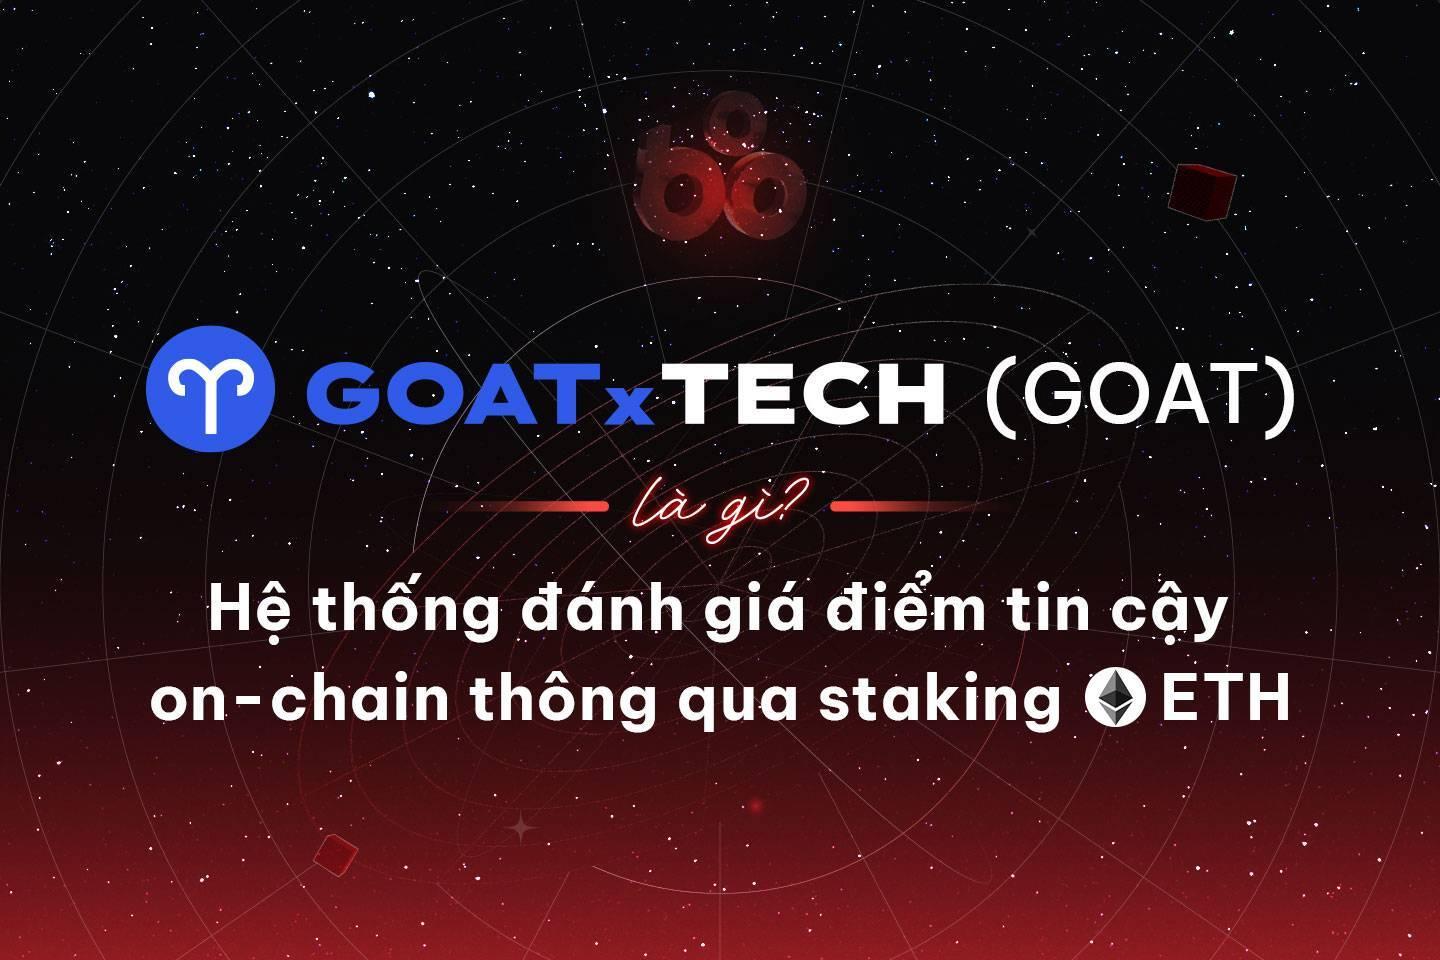 goattech-goat-la-gi-he-thong-danh-gia-diem-tin-cay-on-chain-thong-qua-staking-eth